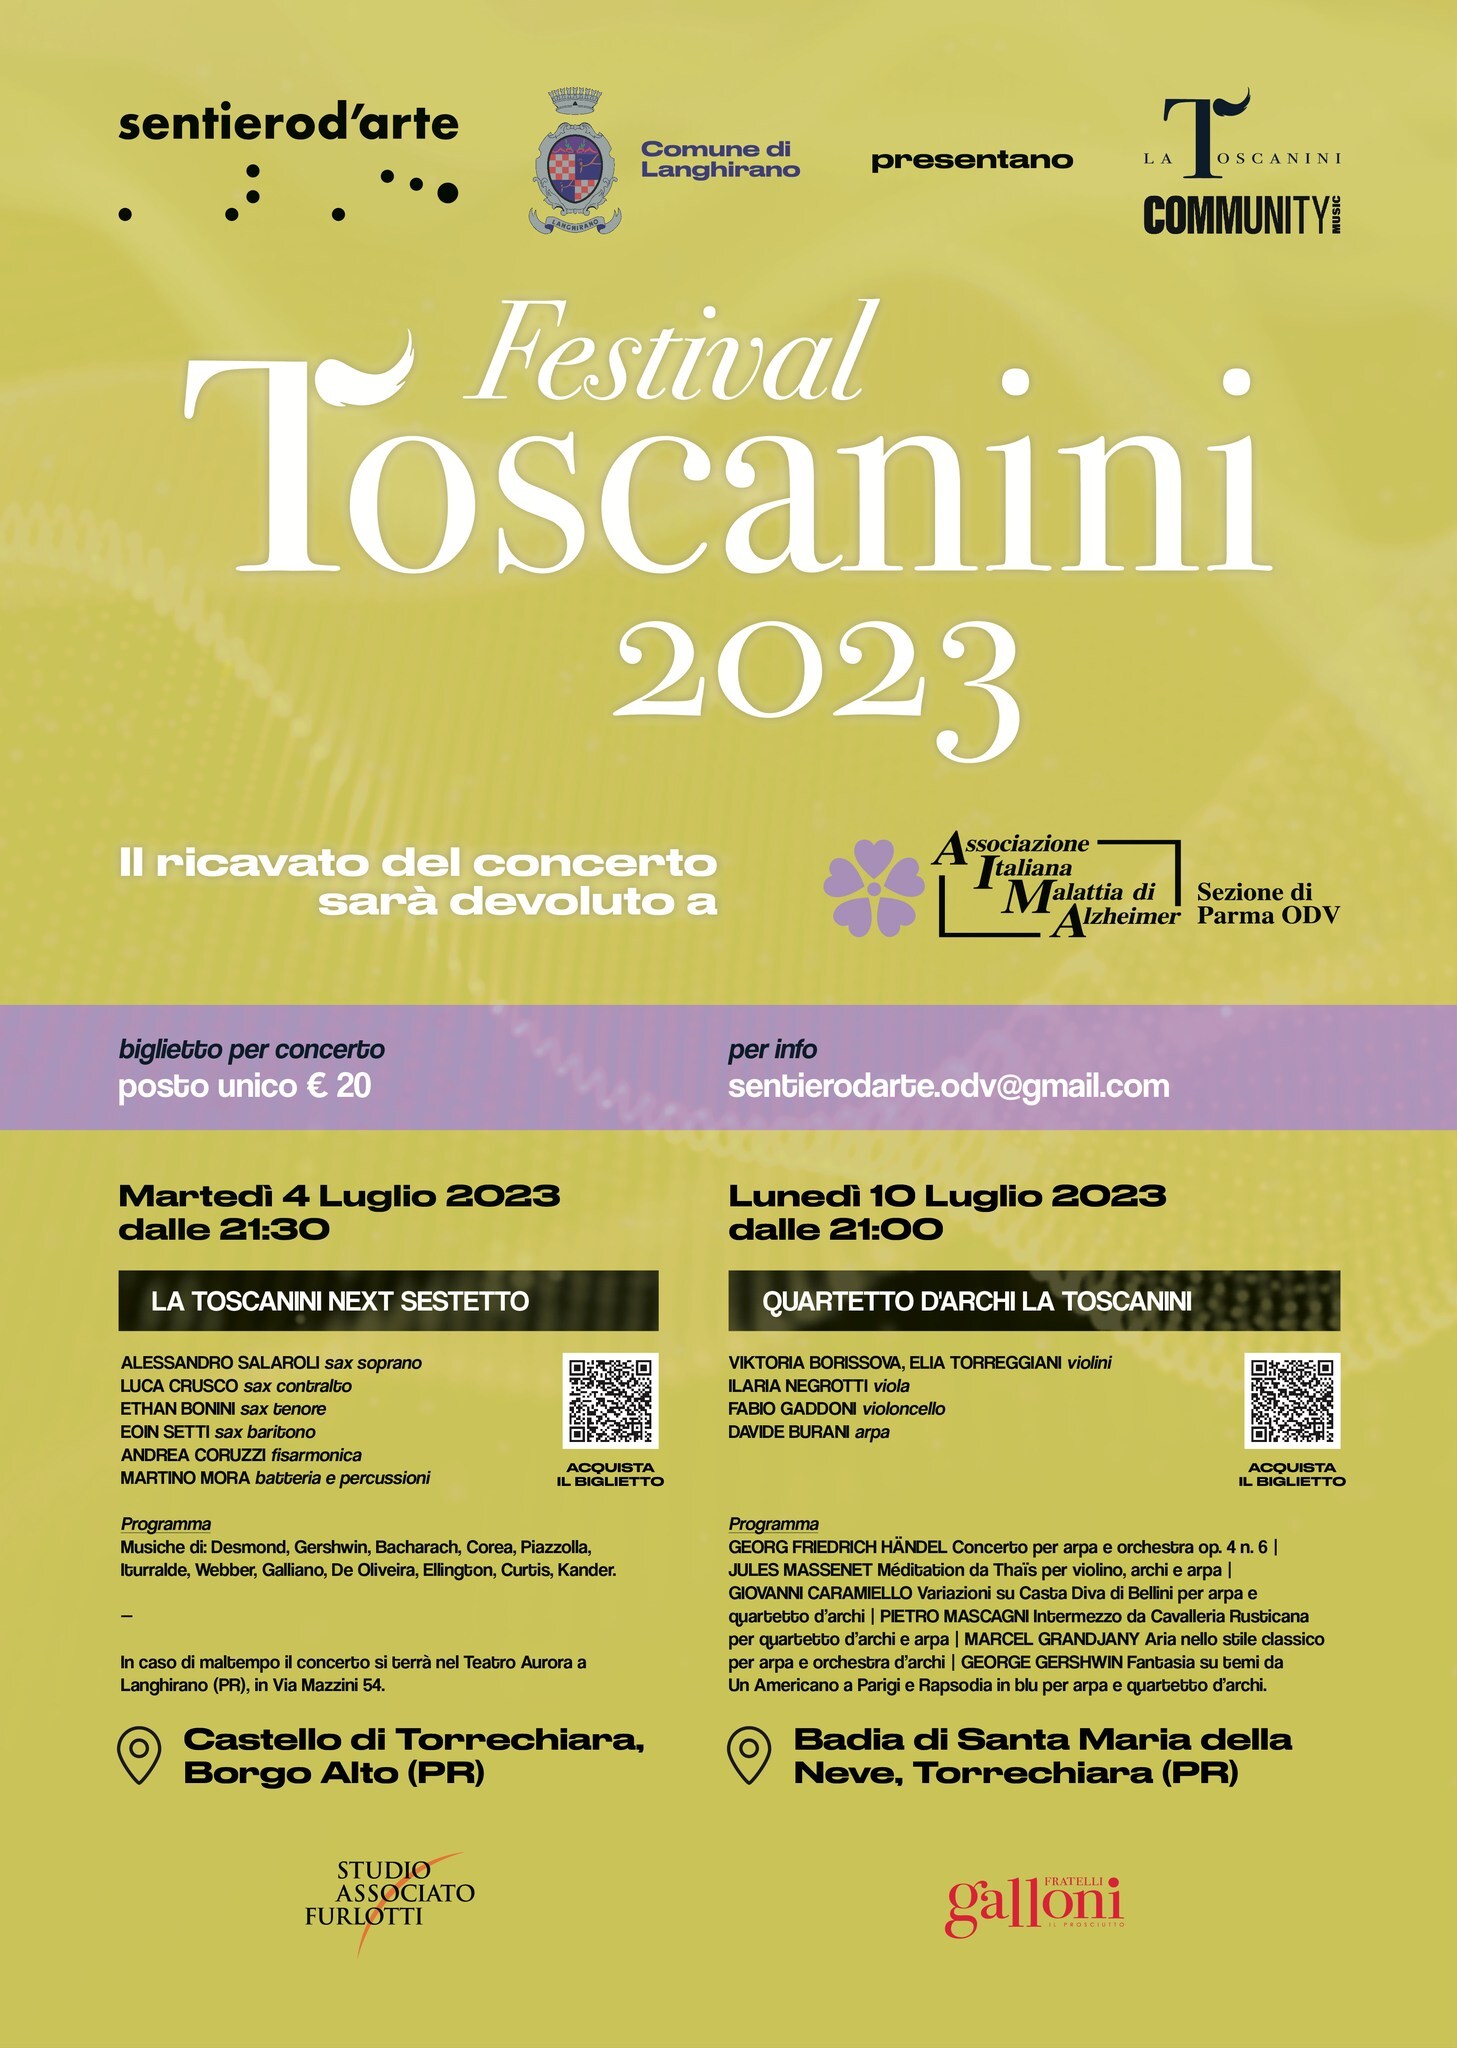 La grande musica torna protagonista a Torrechiara con La Toscanini!